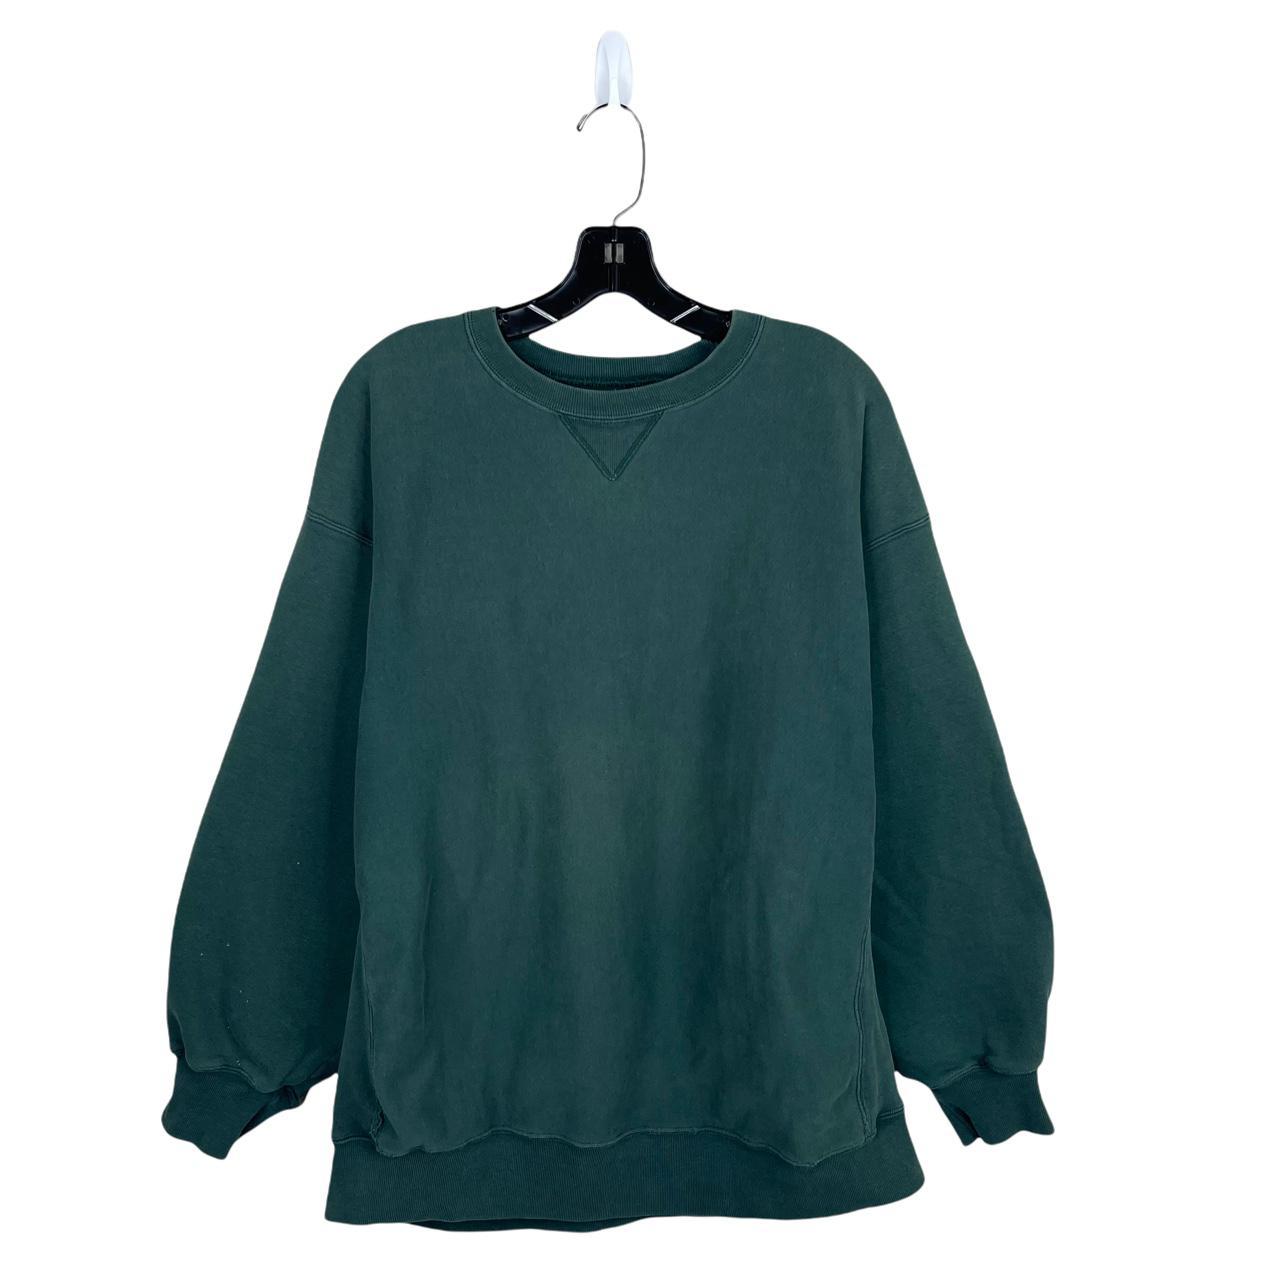 Product Image 1 - Vintage 90s GAP Sweatshirt 
Flaws